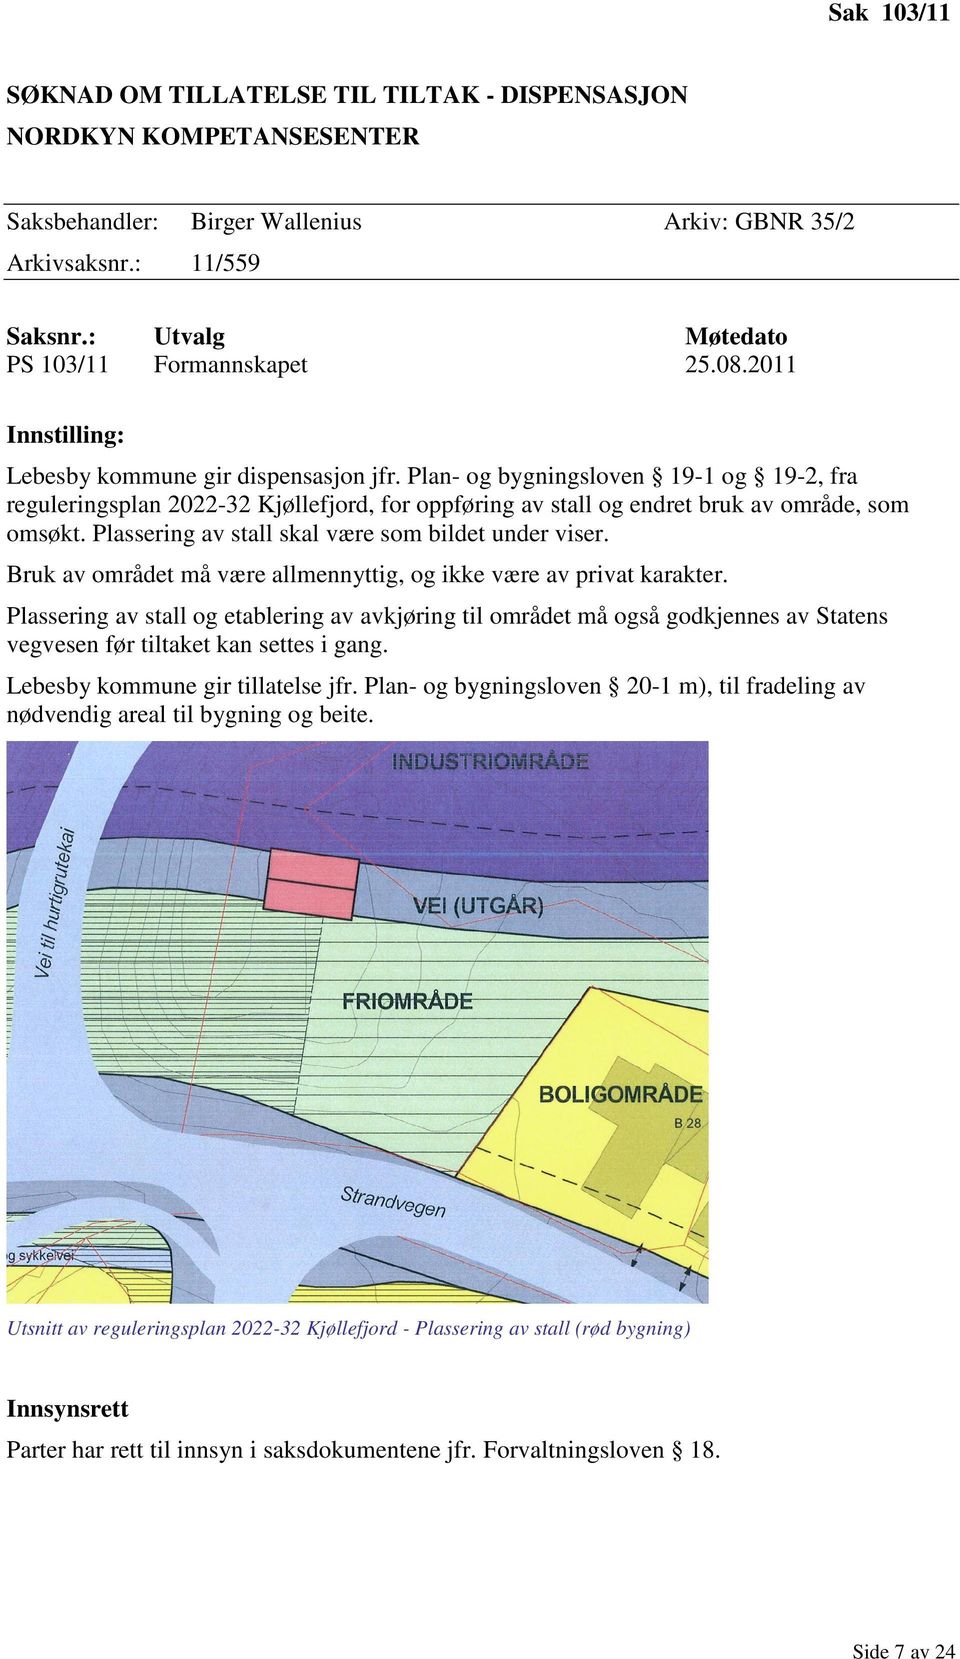 Plan- og bygningsloven 19-1 og 19-2, fra reguleringsplan 2022-32 Kjøllefjord, for oppføring av stall og endret bruk av område, som omsøkt. Plassering av stall skal være som bildet under viser.